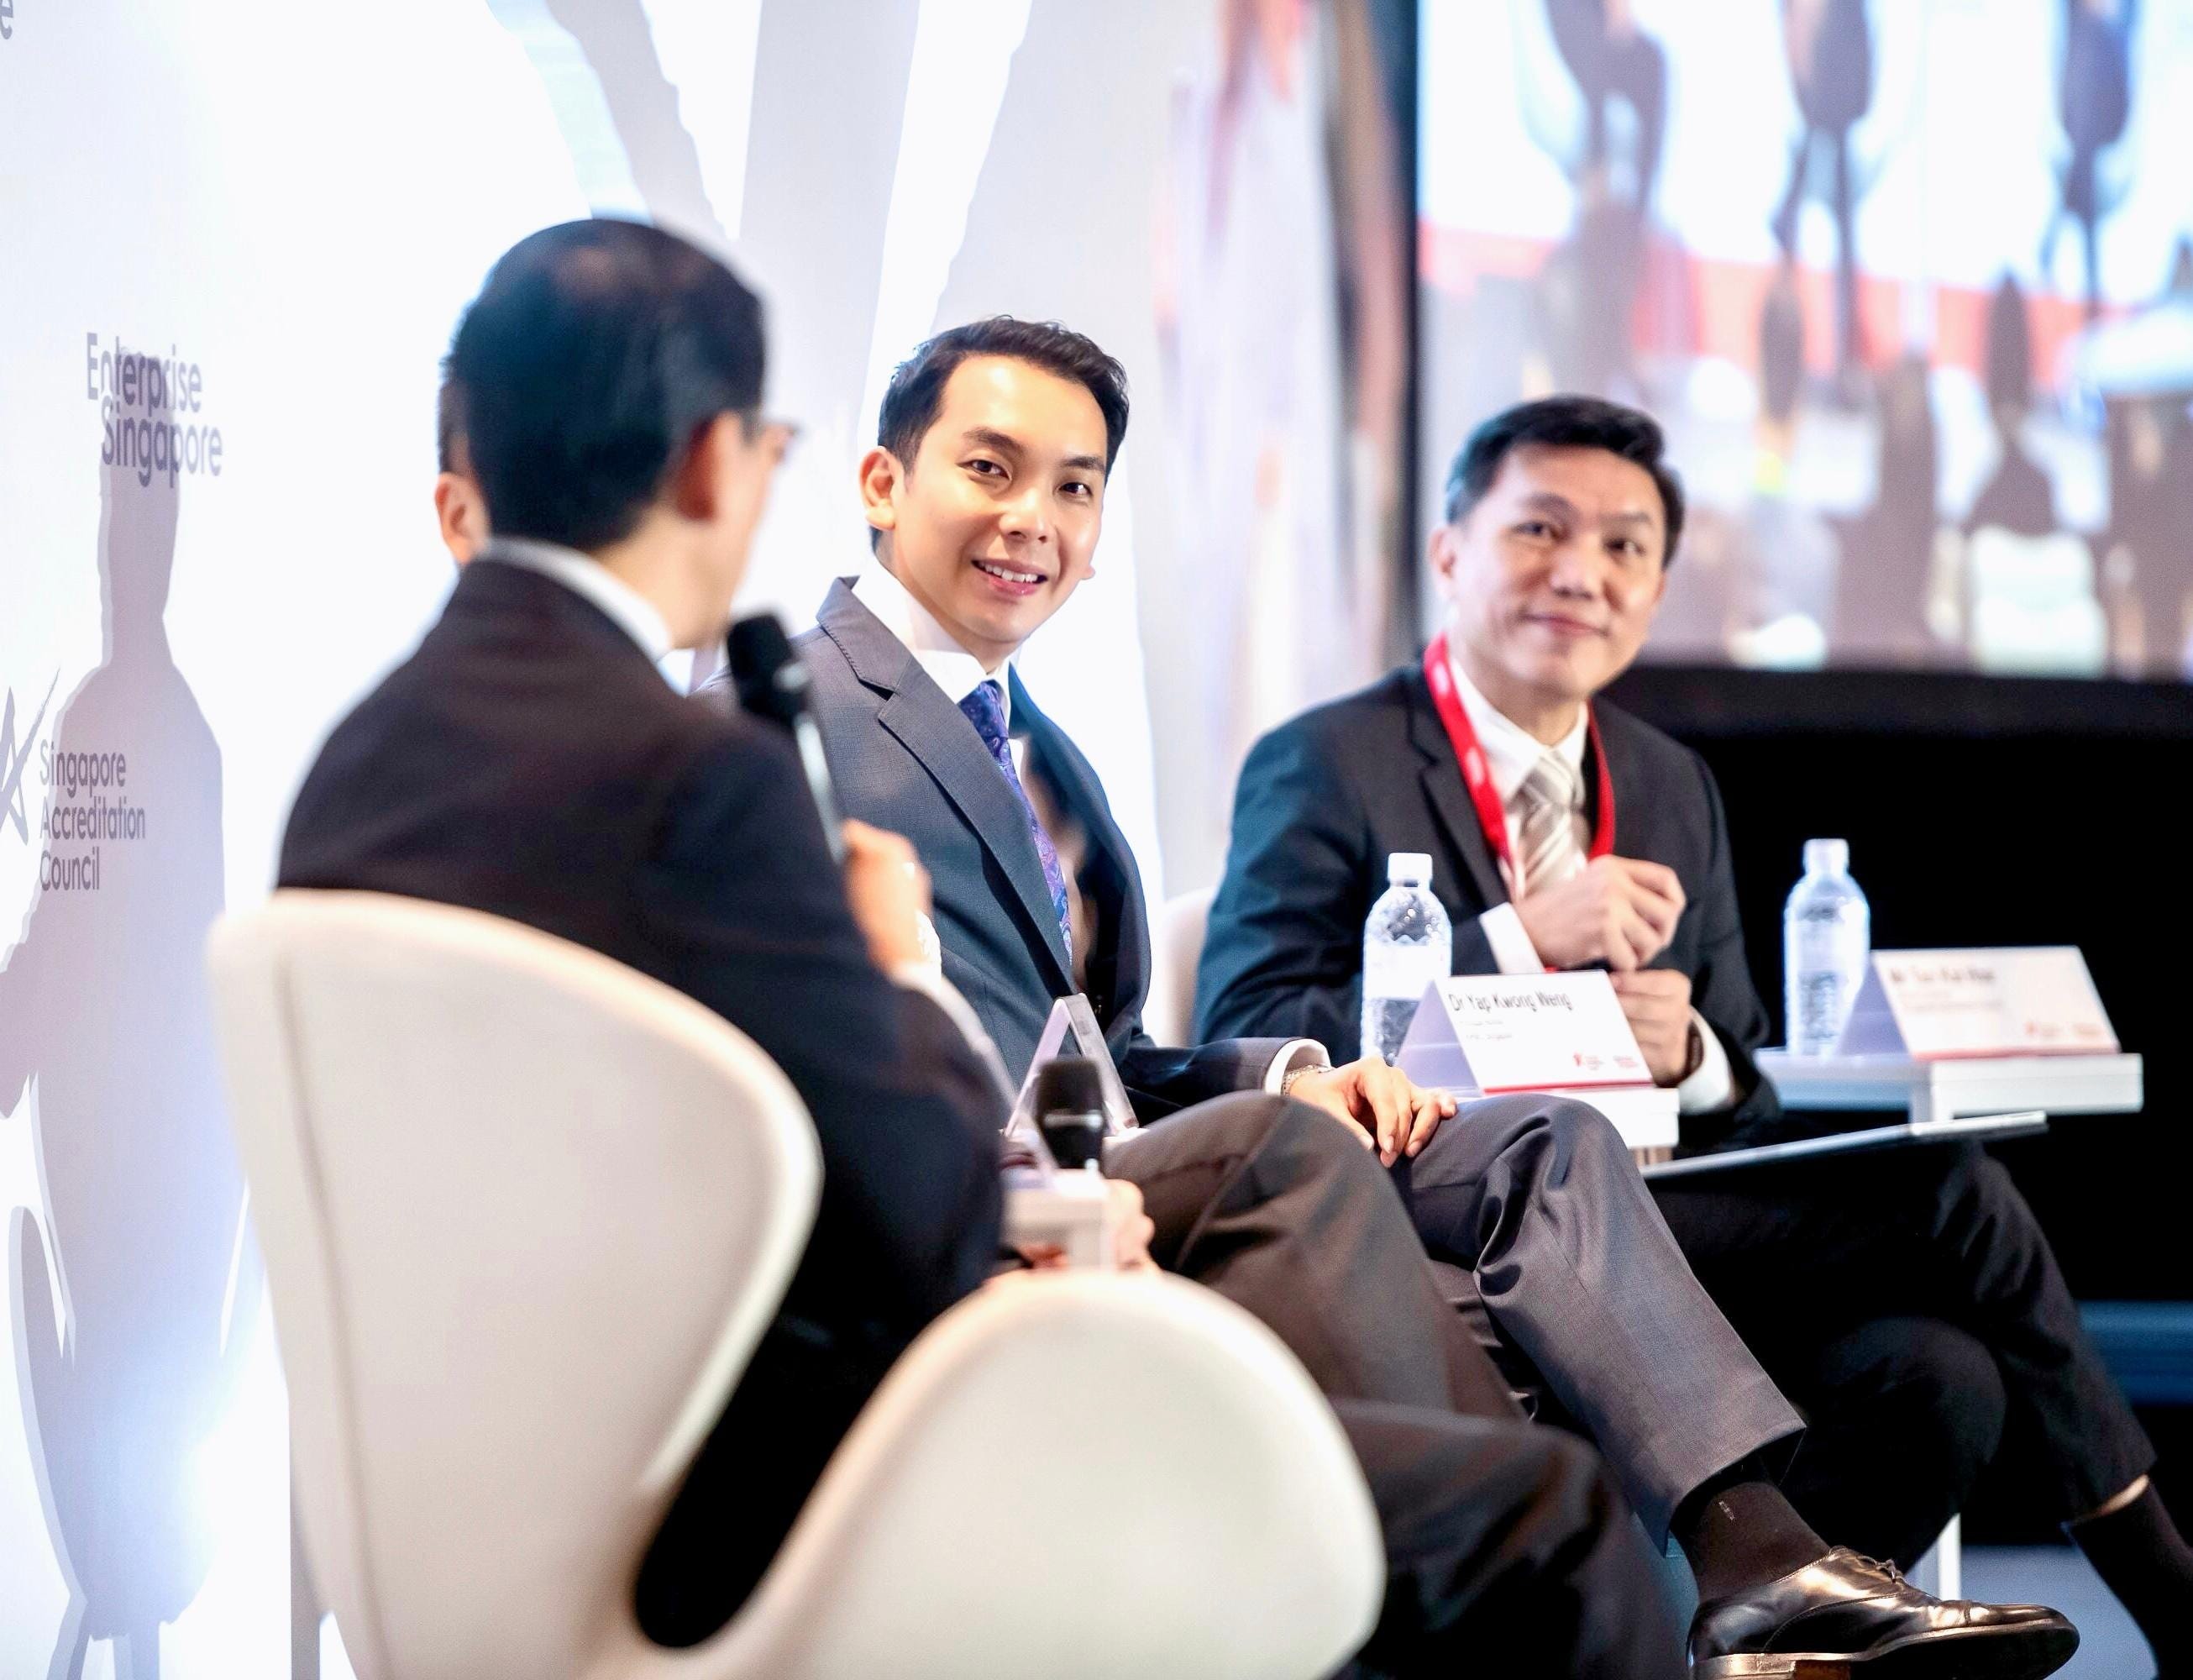 Yap (Mitte) nimmt an einer Podiumsdiskussion teil, die von Enterprise Singapore organisiert wird, einer Regierungsbehörde, die die Unternehmensentwicklung unterstützt.